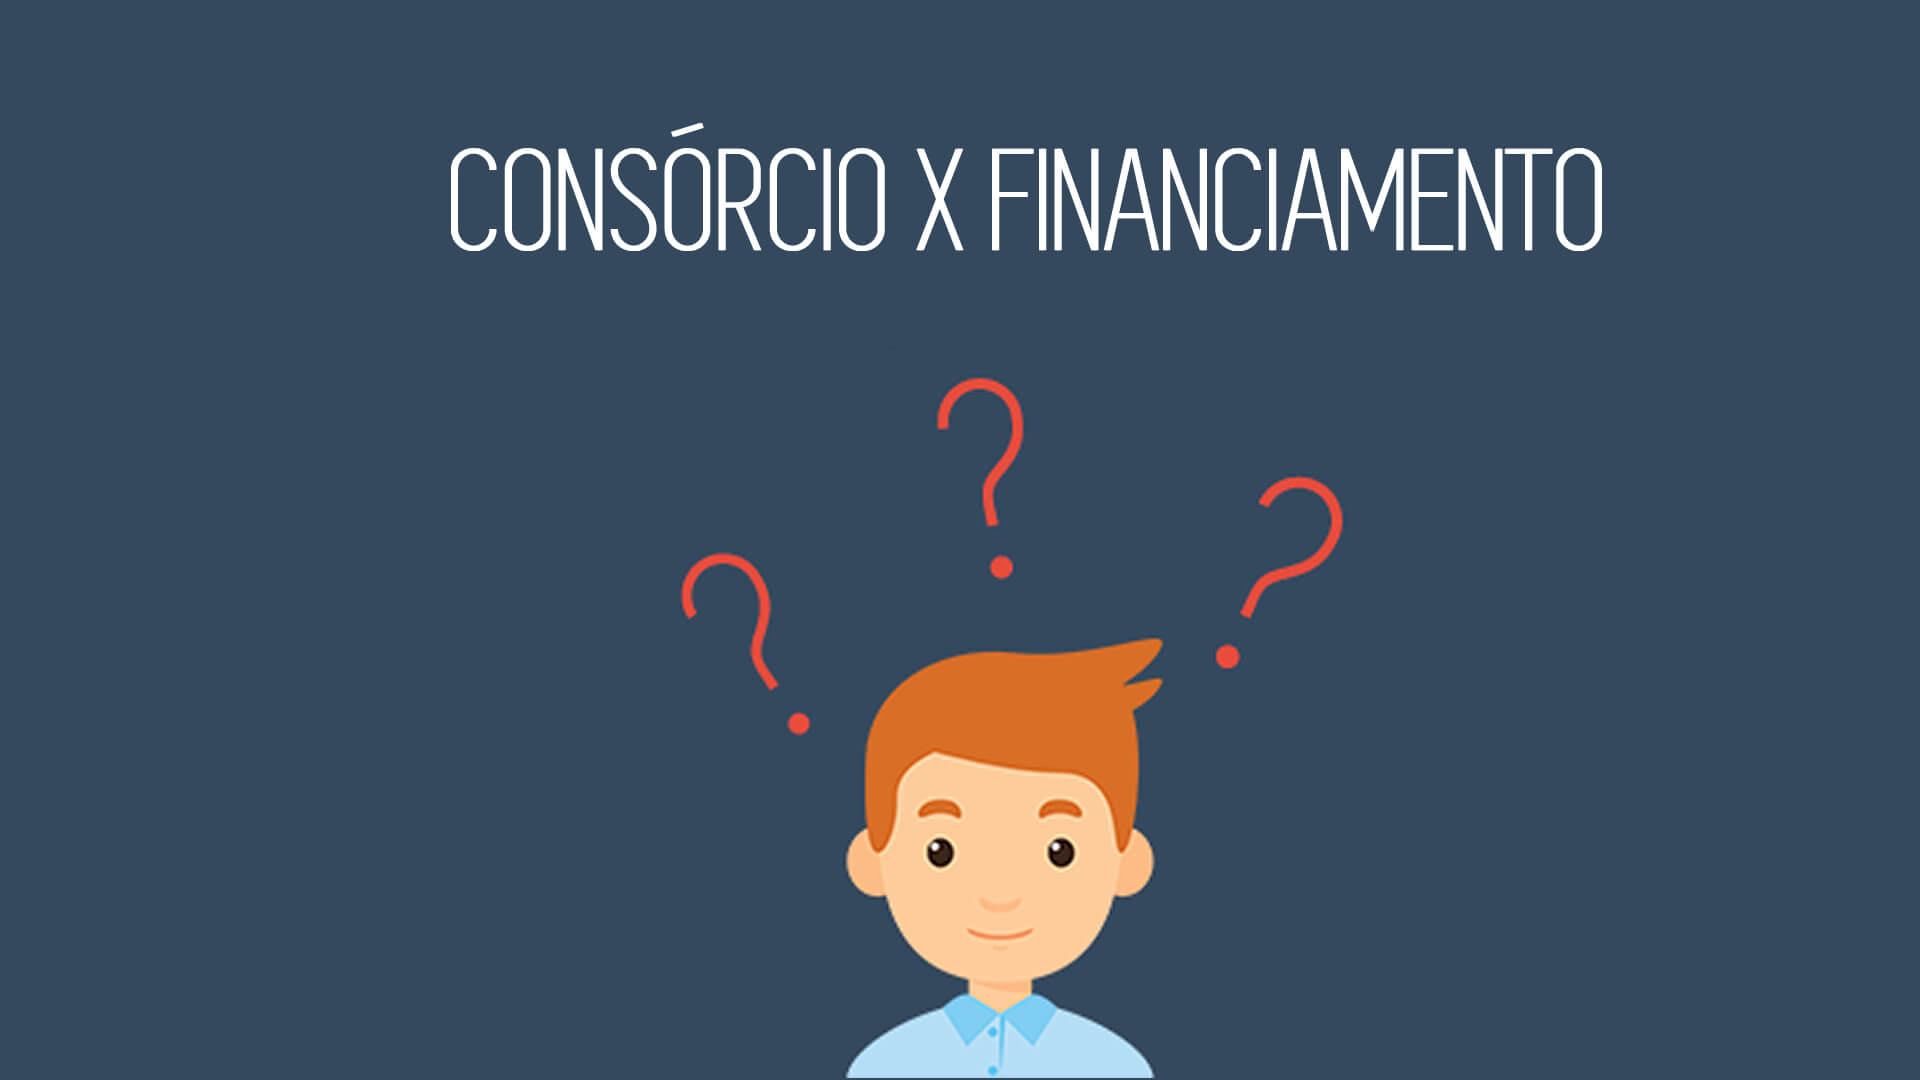 Qual é a diferença entre consórcio e financiamento?